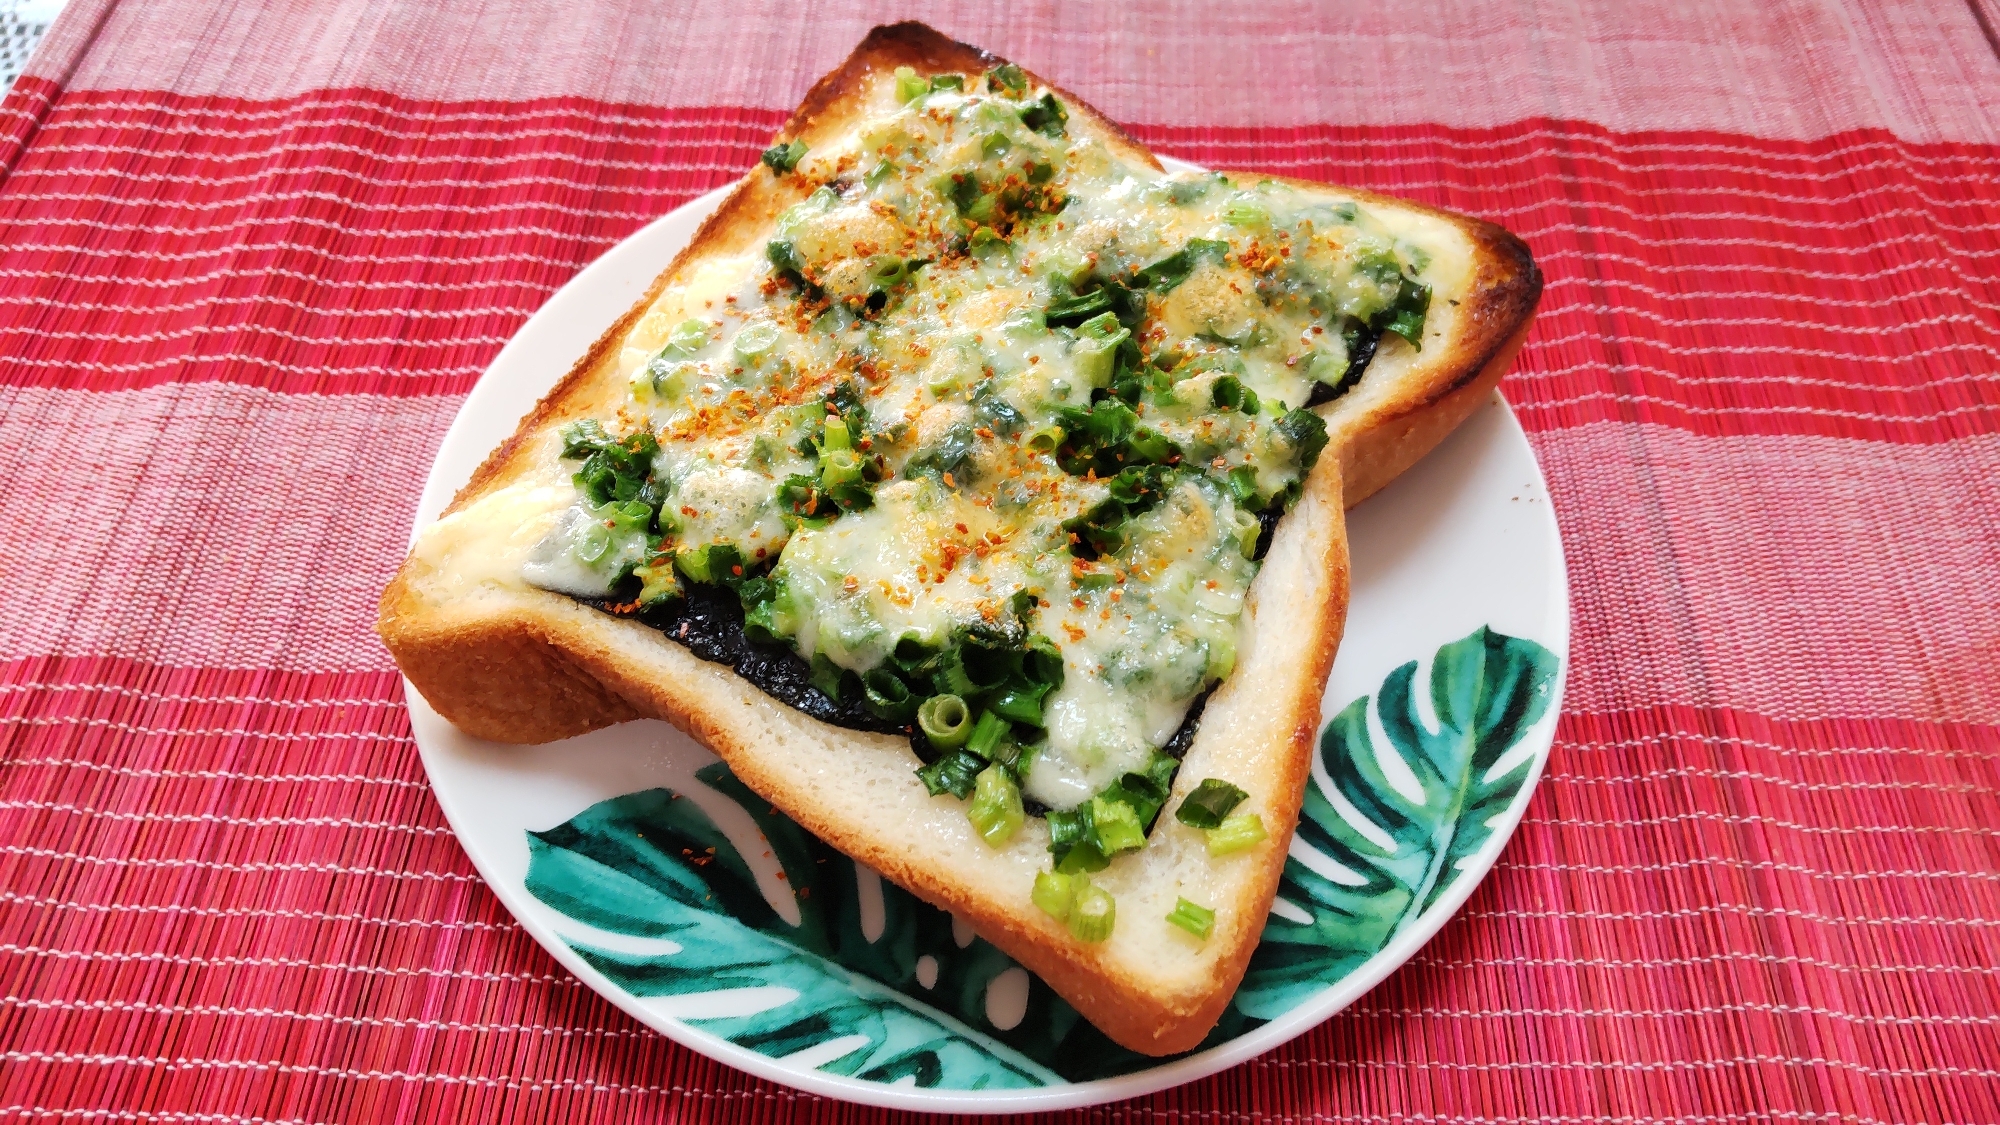 パンで朝食♪ねぎチーズトーストonマヨ味付け海苔